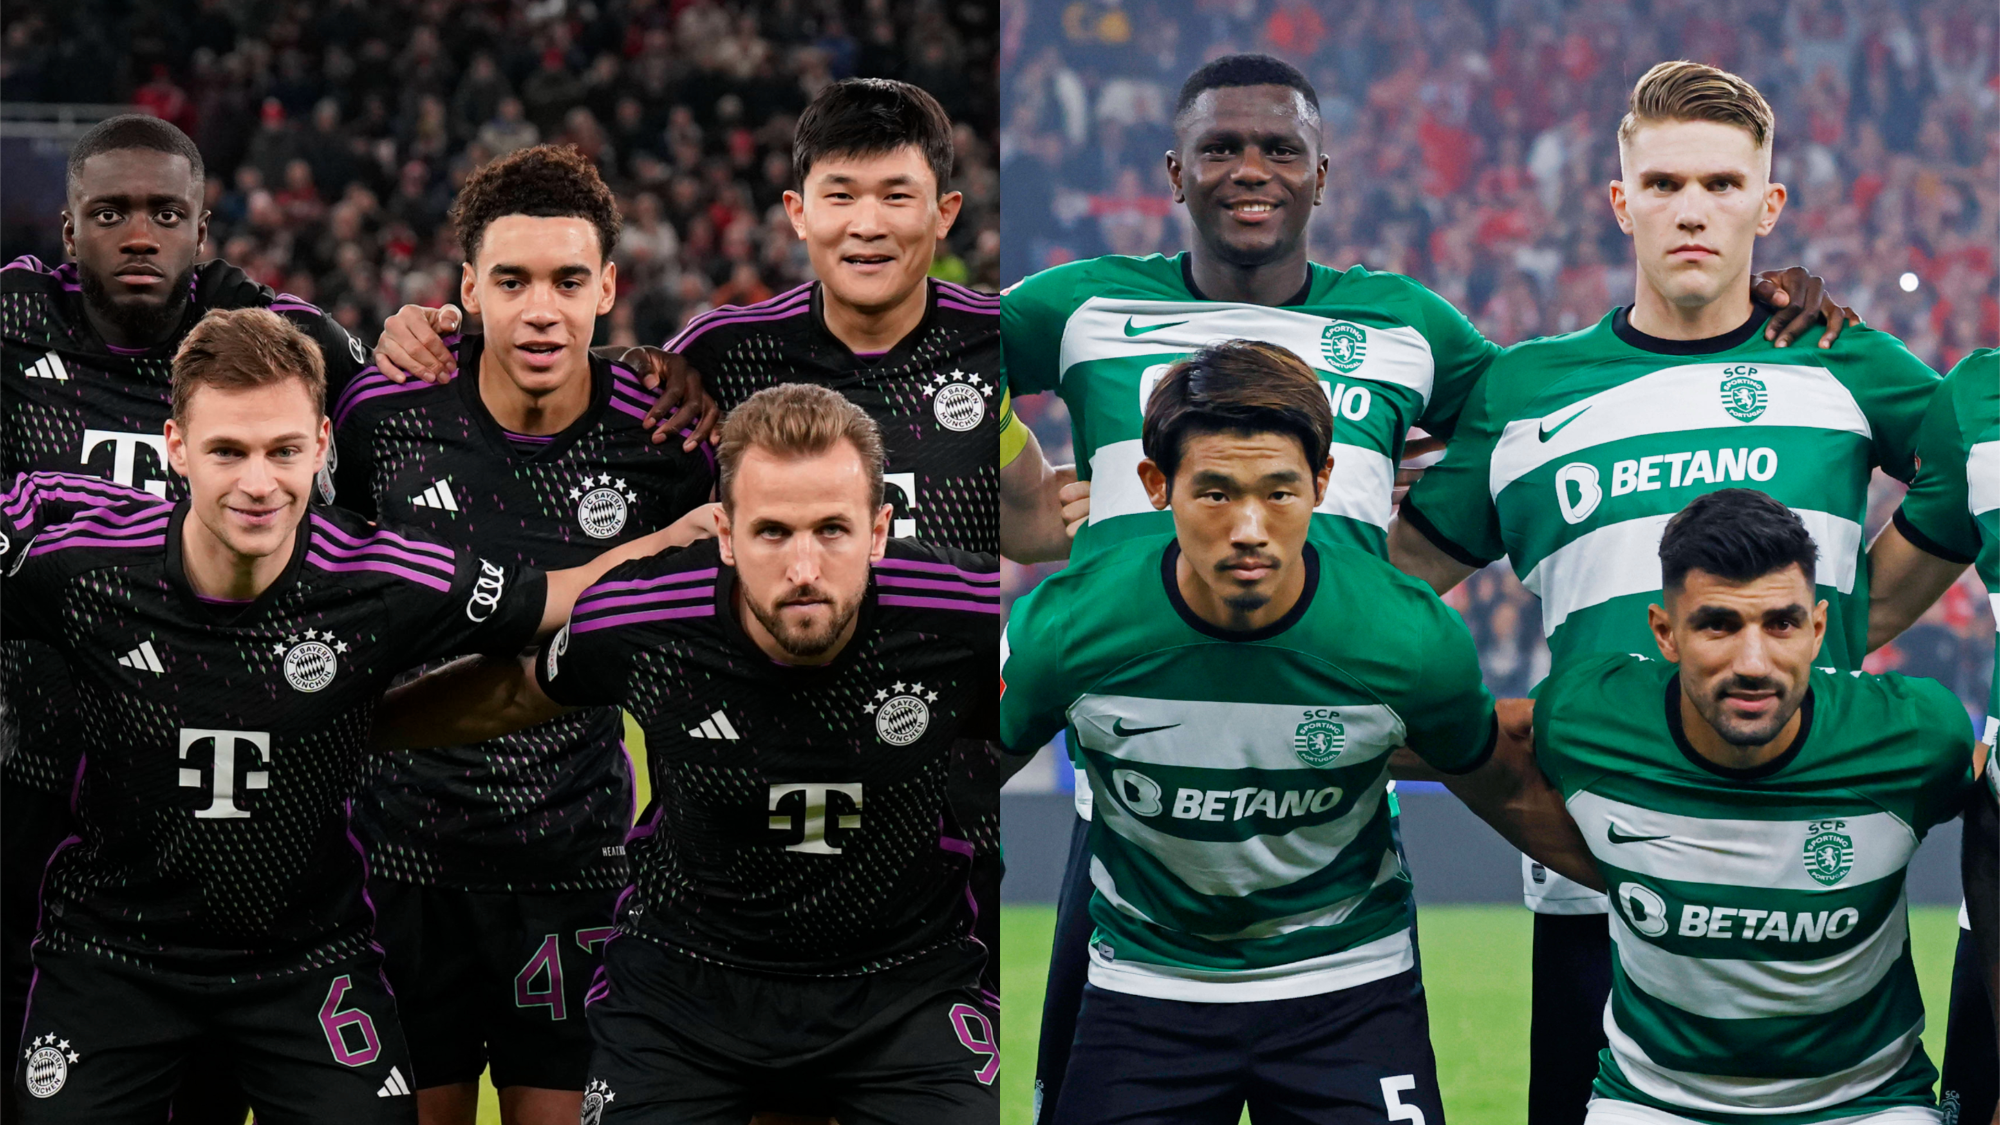 <strong>15. Platz: FC Bayern München &amp; Sporting Lissabon</strong><br>Auf der internationalen Bühne ist es beiden Vereinen gelungen zu siegen, deshalb teilen sich der deutsche Rekordmeister und der portugiesische Hauptstadtklub Platz 15 in unserem Ranking (16 Siege, drei Unentschieden, 3 Niederlagen).